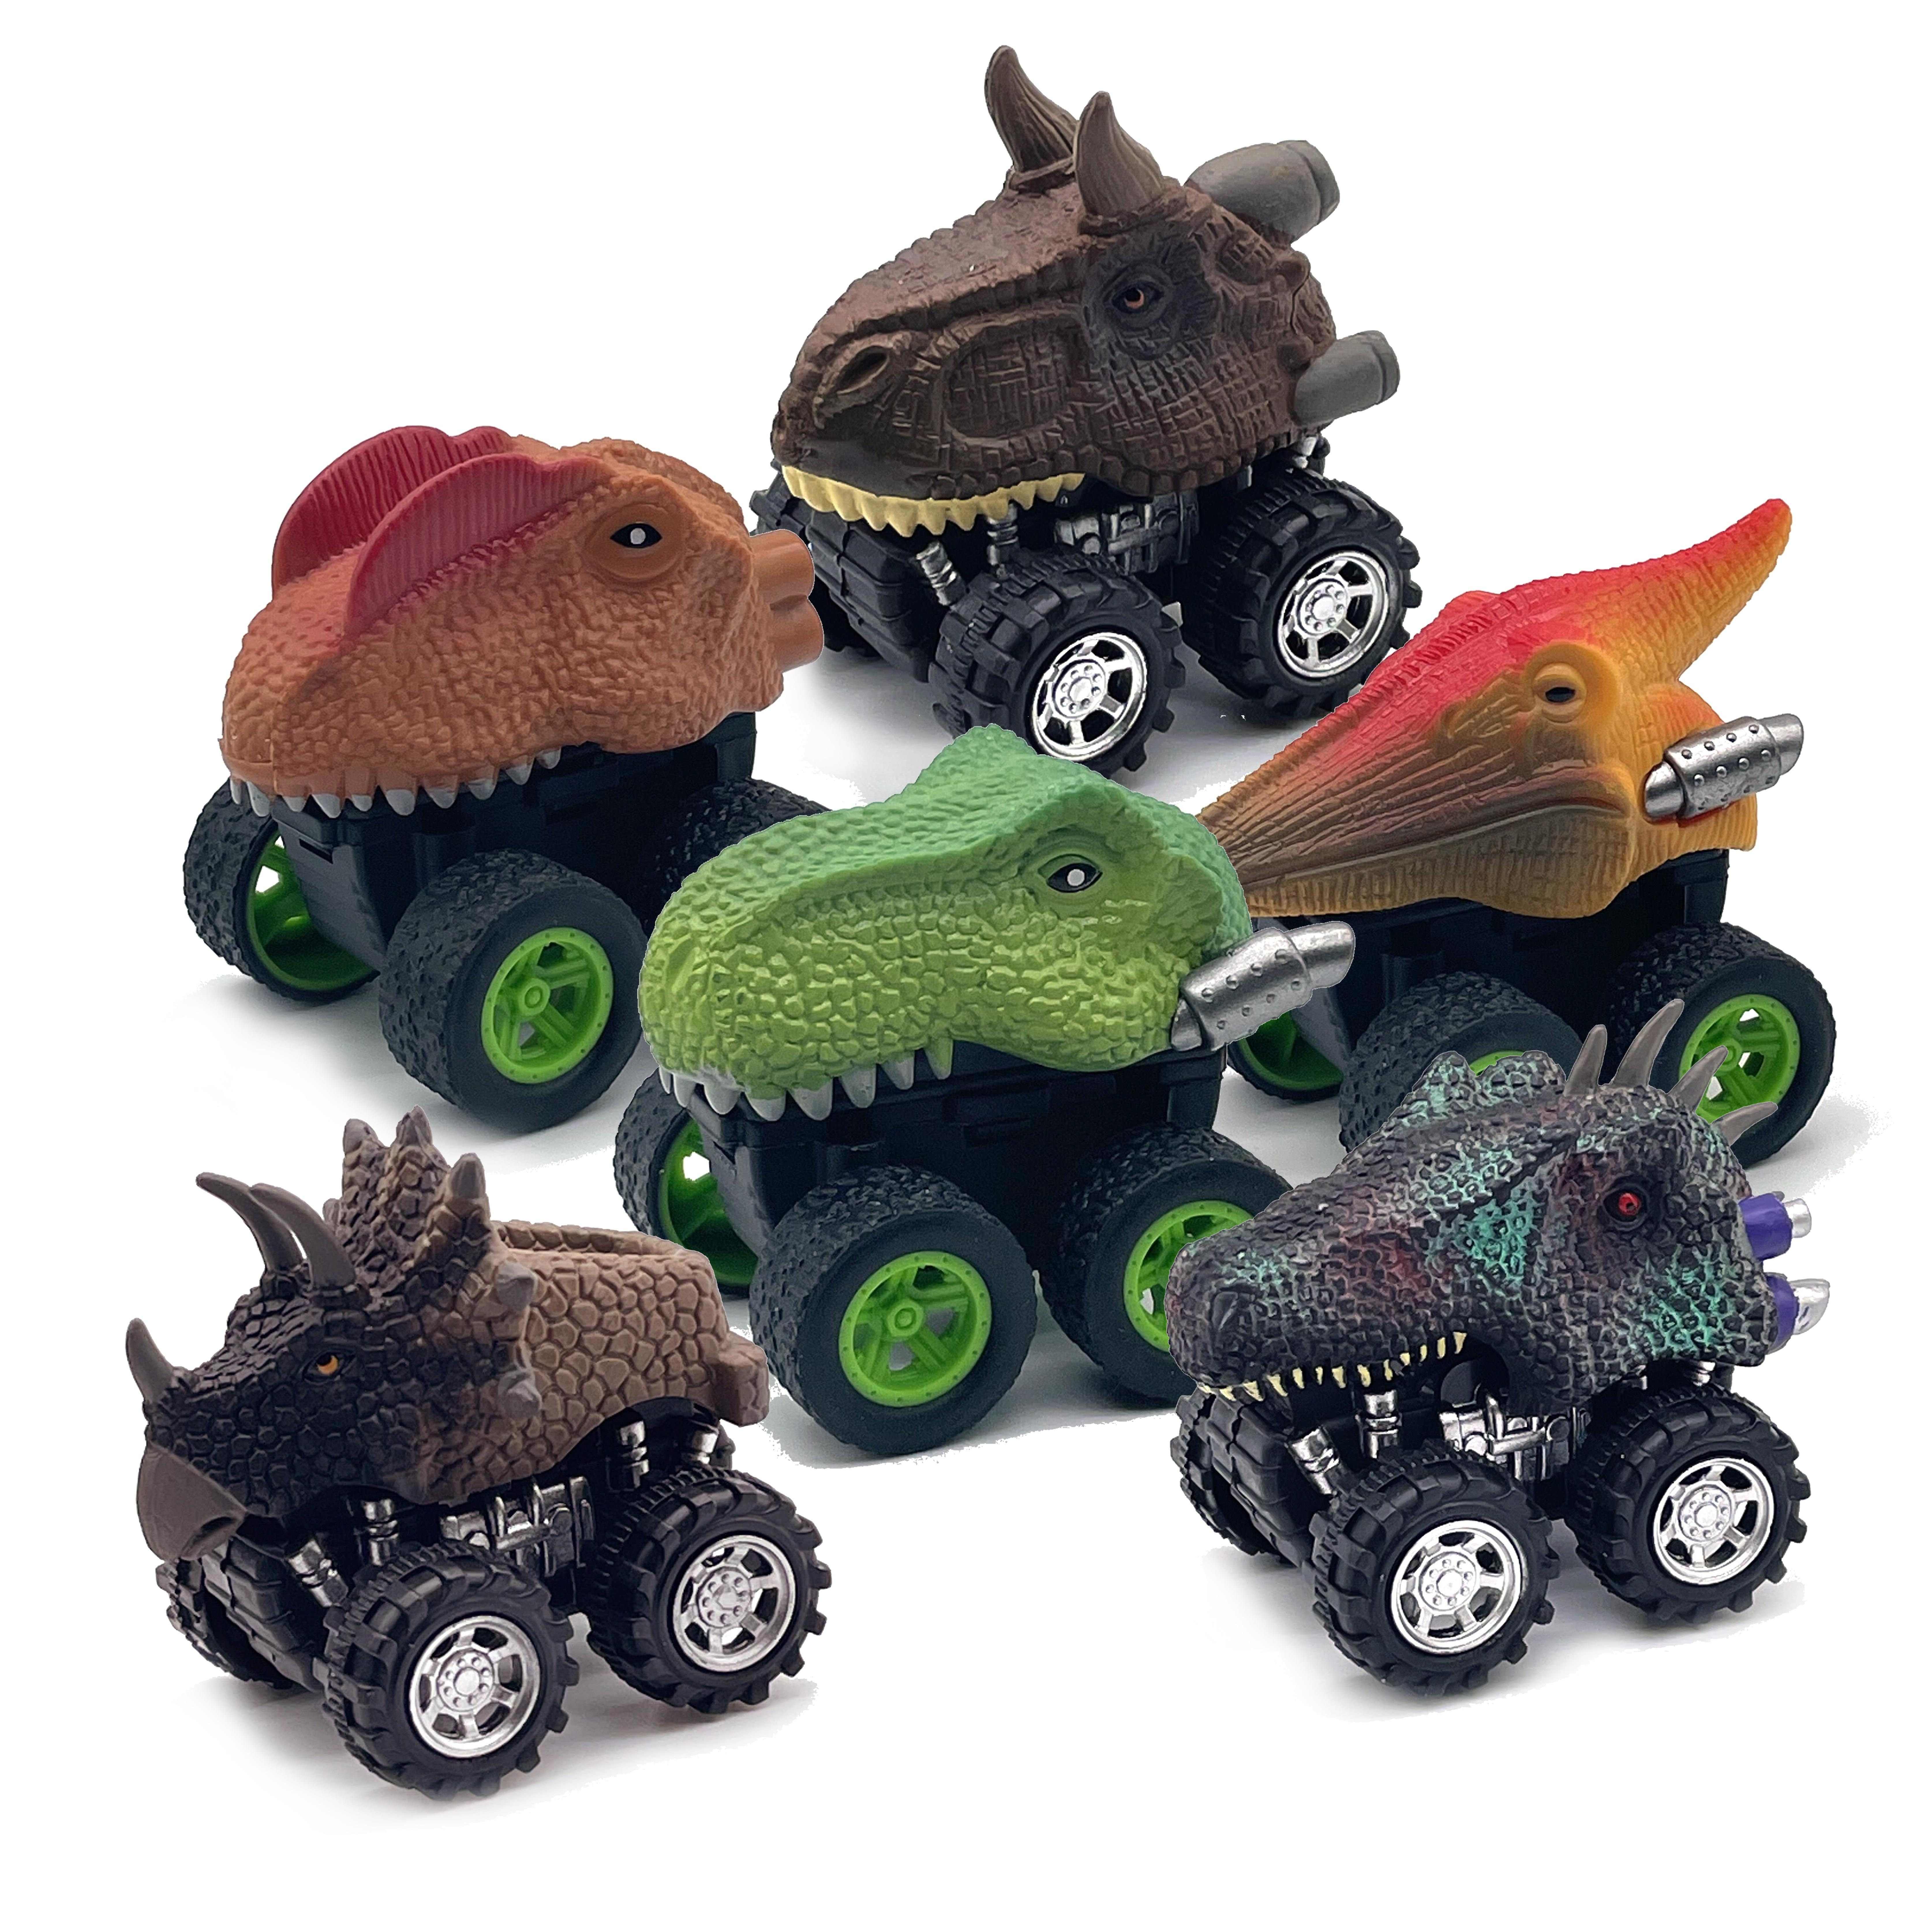 Caminhões de dinossauros para crianças,Dinosaur Dinosaur Toy Cars